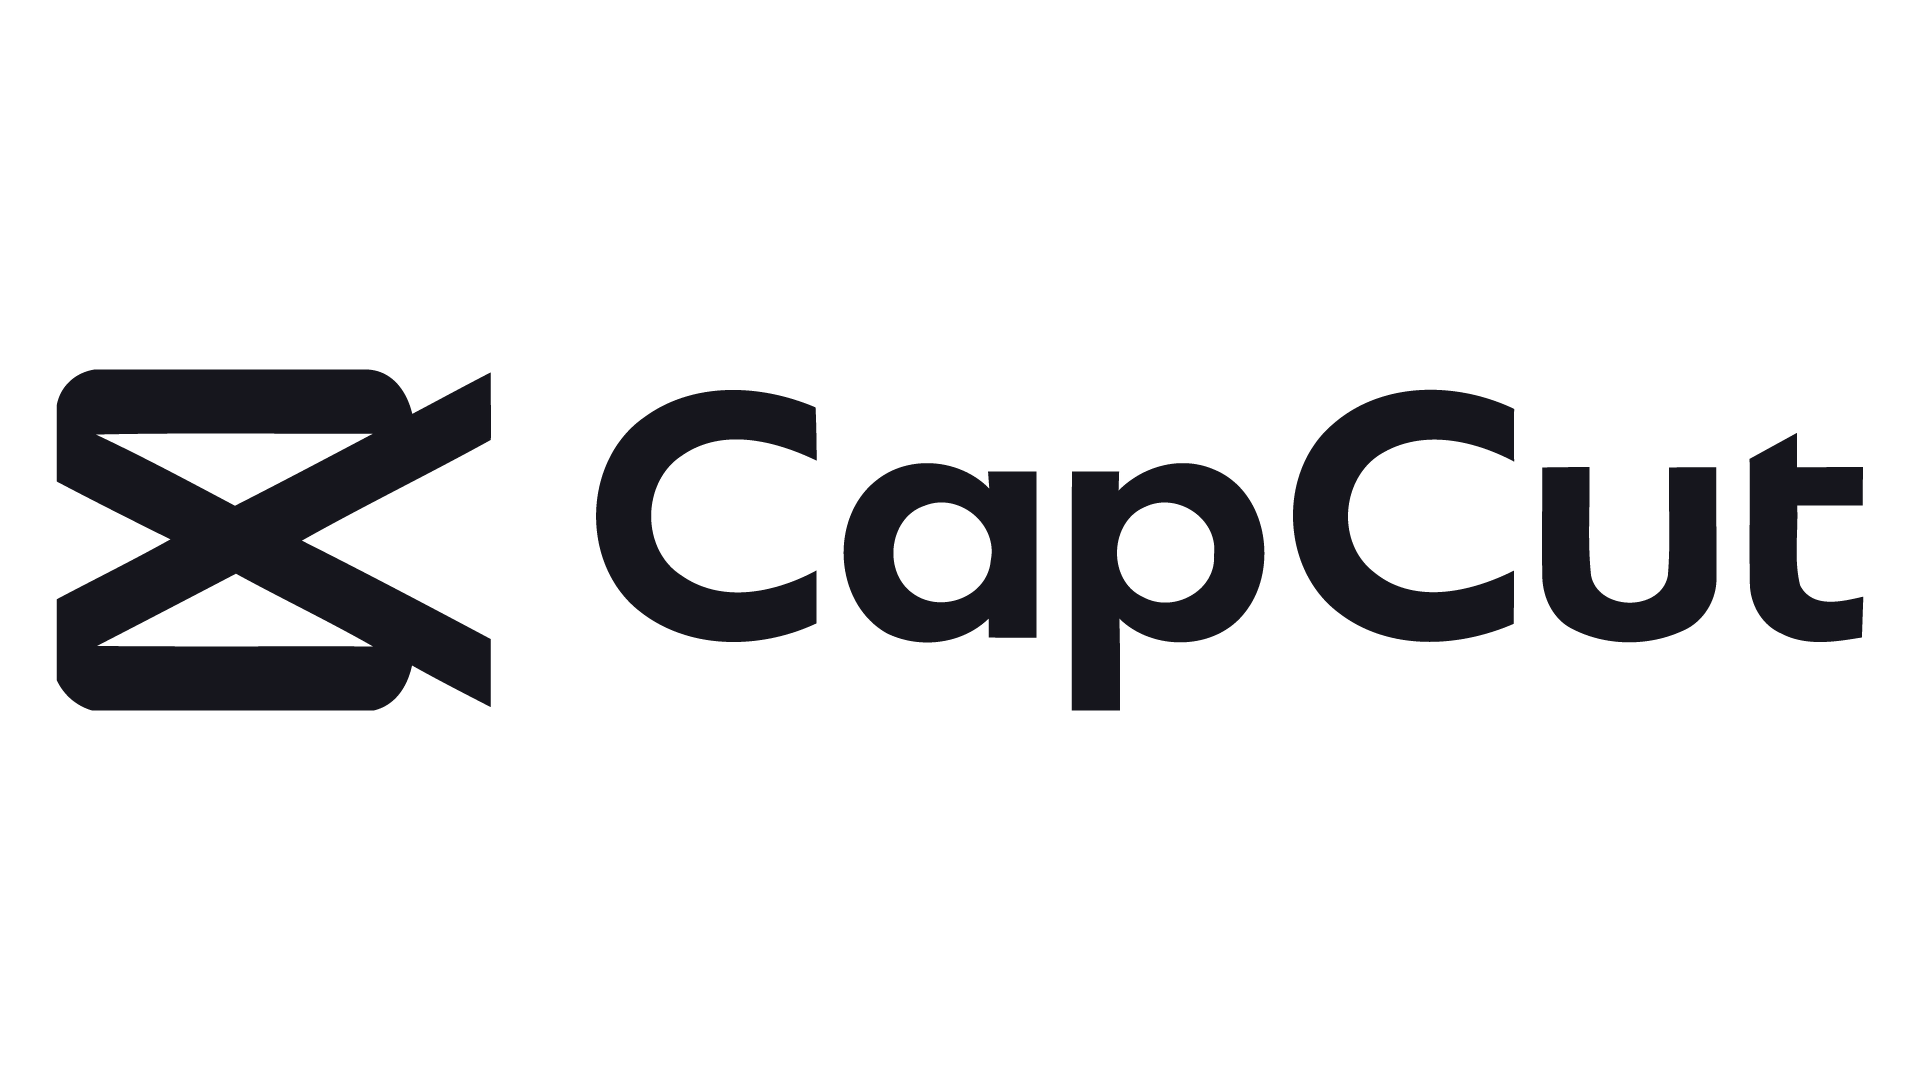 CapCut_wiki wiki wiki